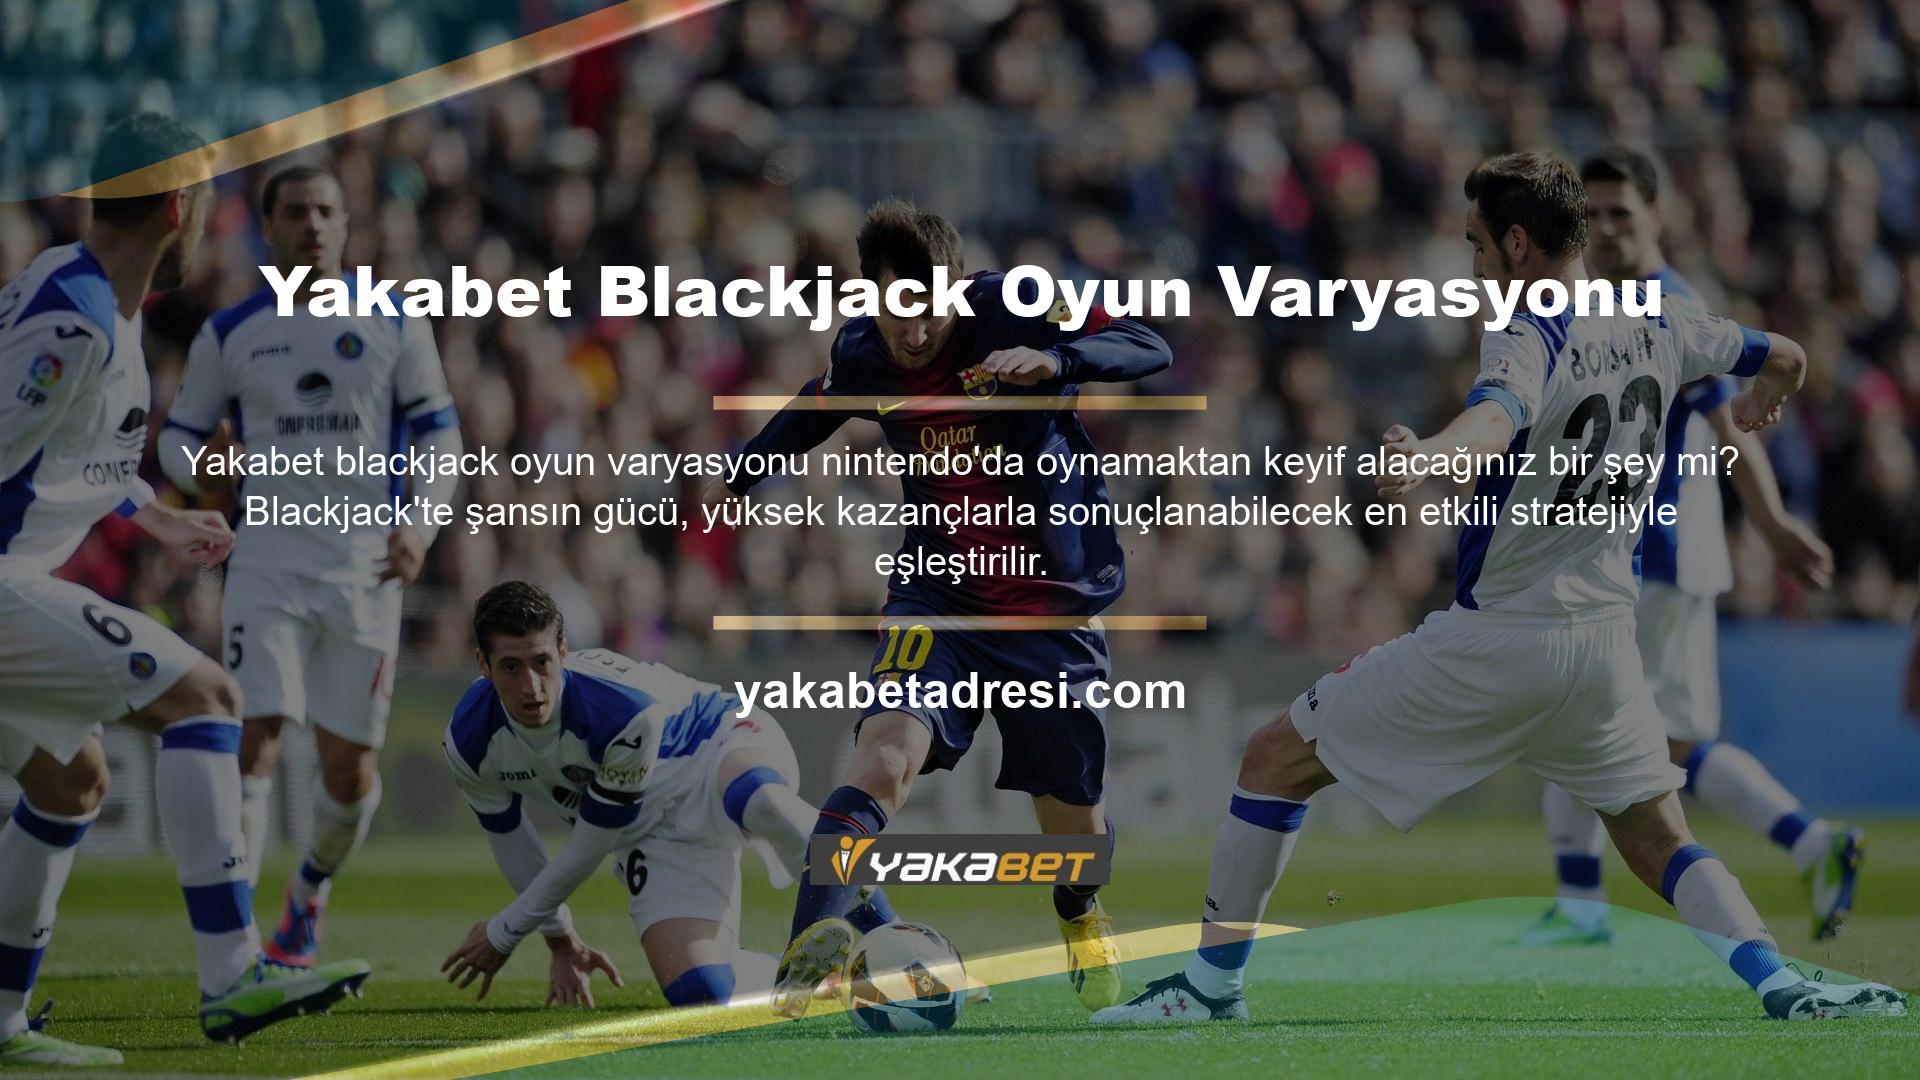 Bilinen Türk casinoları bu yetenekleri blackjack oyunlarında güvenilir bir şekilde kullanabilir